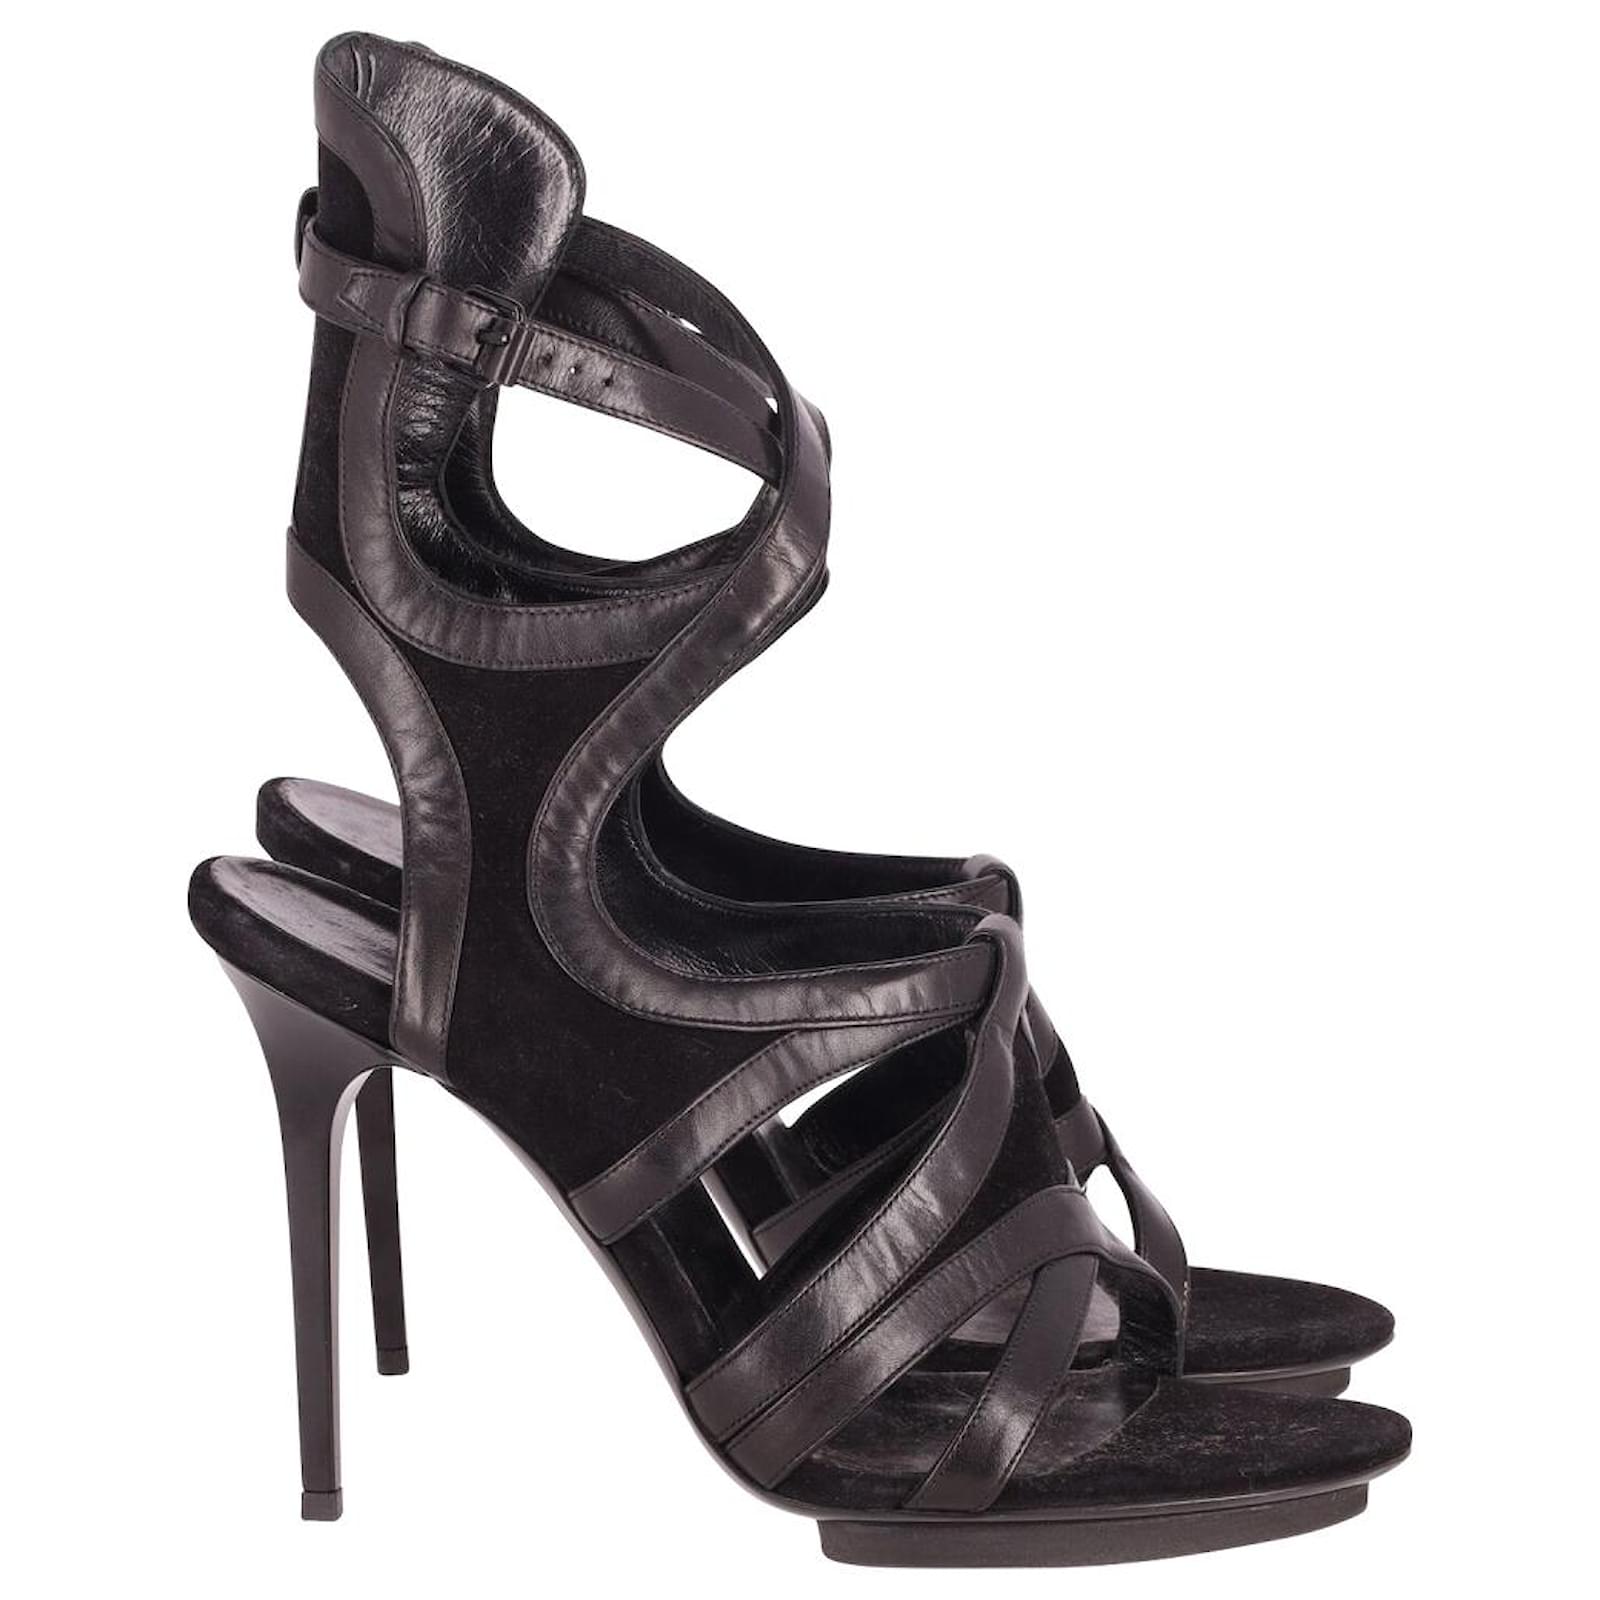 Carvela Karma Cut Out Stiletto Heel Suede Court Shoes, Black, 4